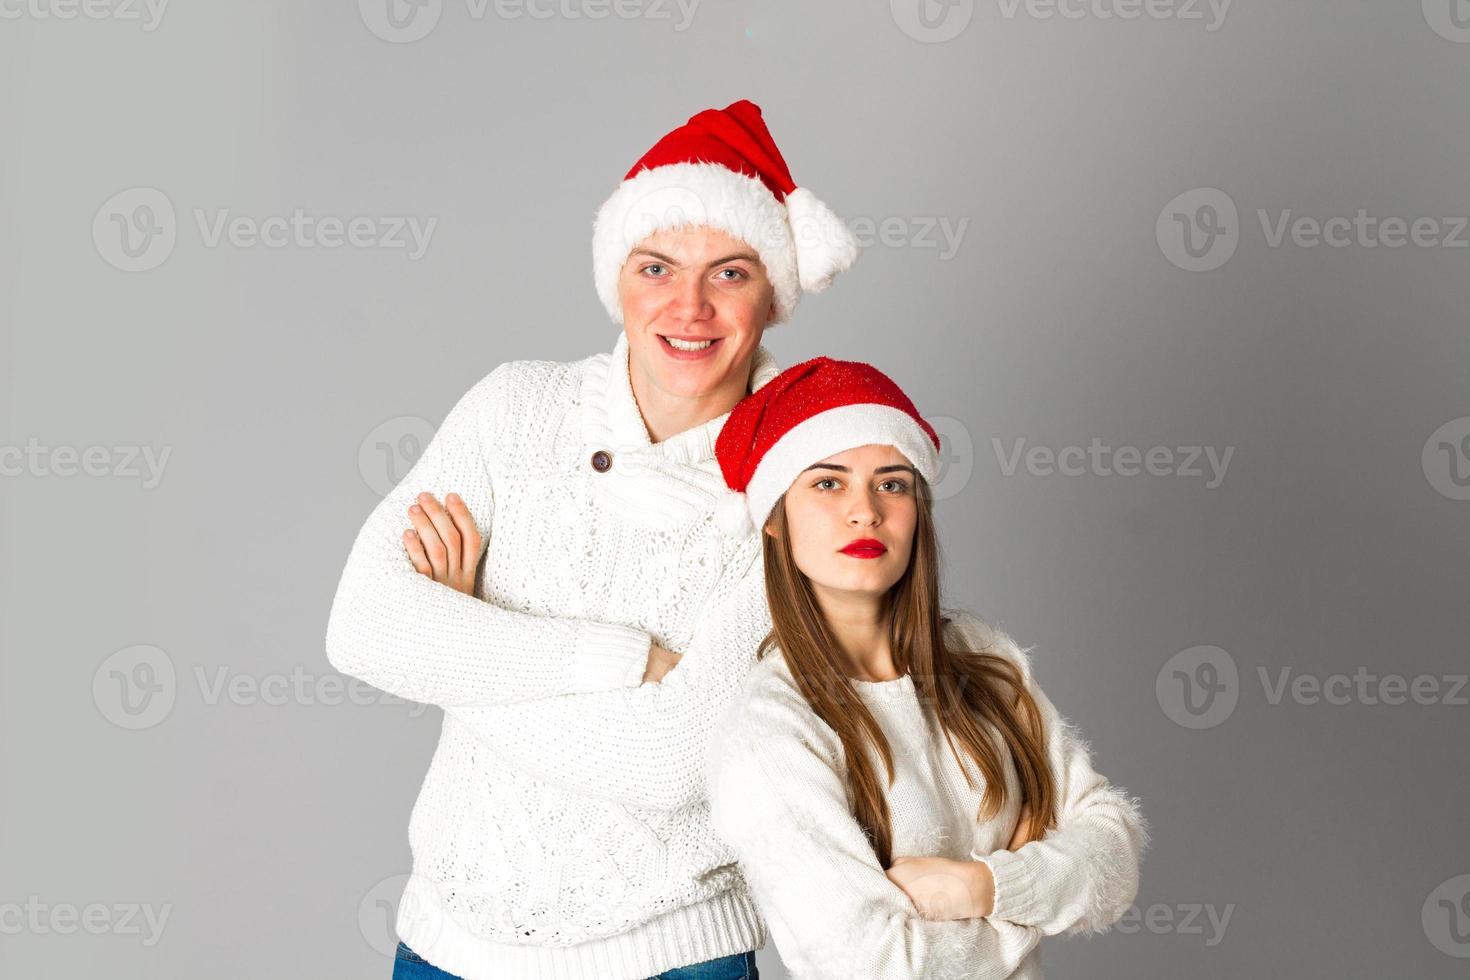 pareja celebra navidad en estudio foto